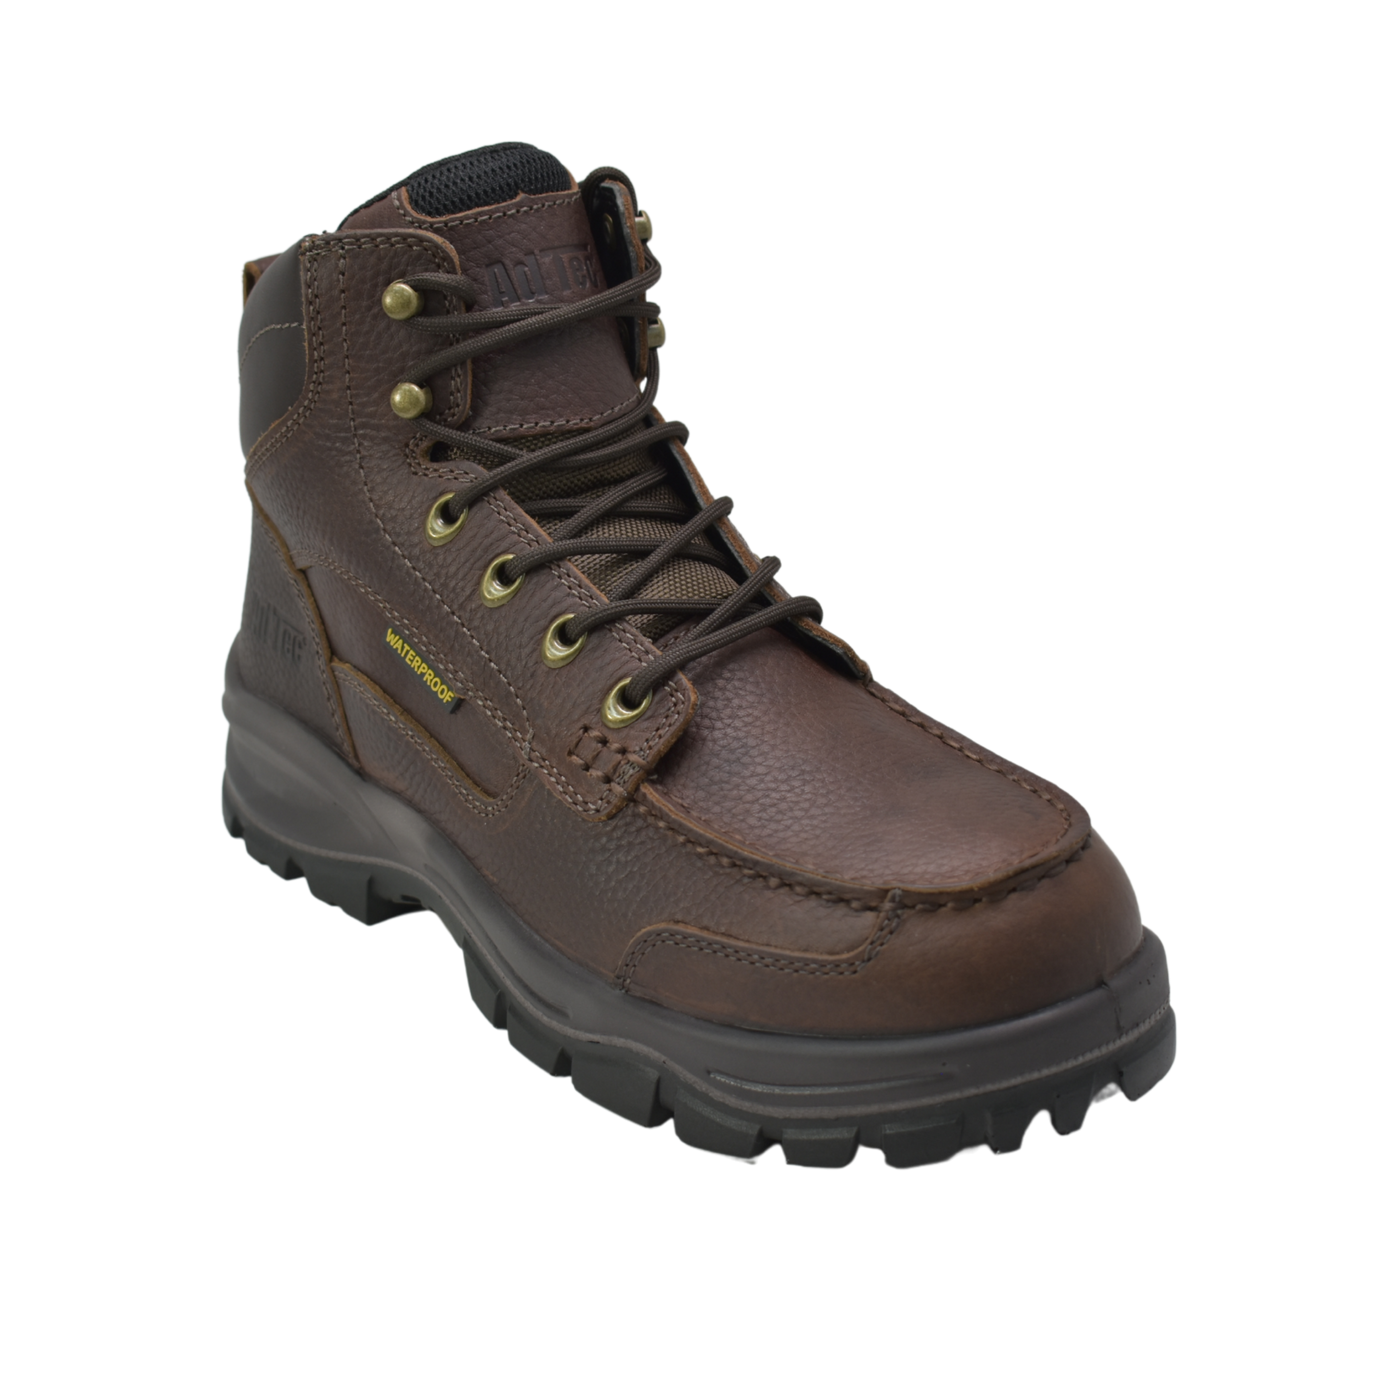 Men 6" Moc Toe Waterproof Work Boots - 1031 - Shop Genuine Leather men & women's boots online | AdTecFootWear